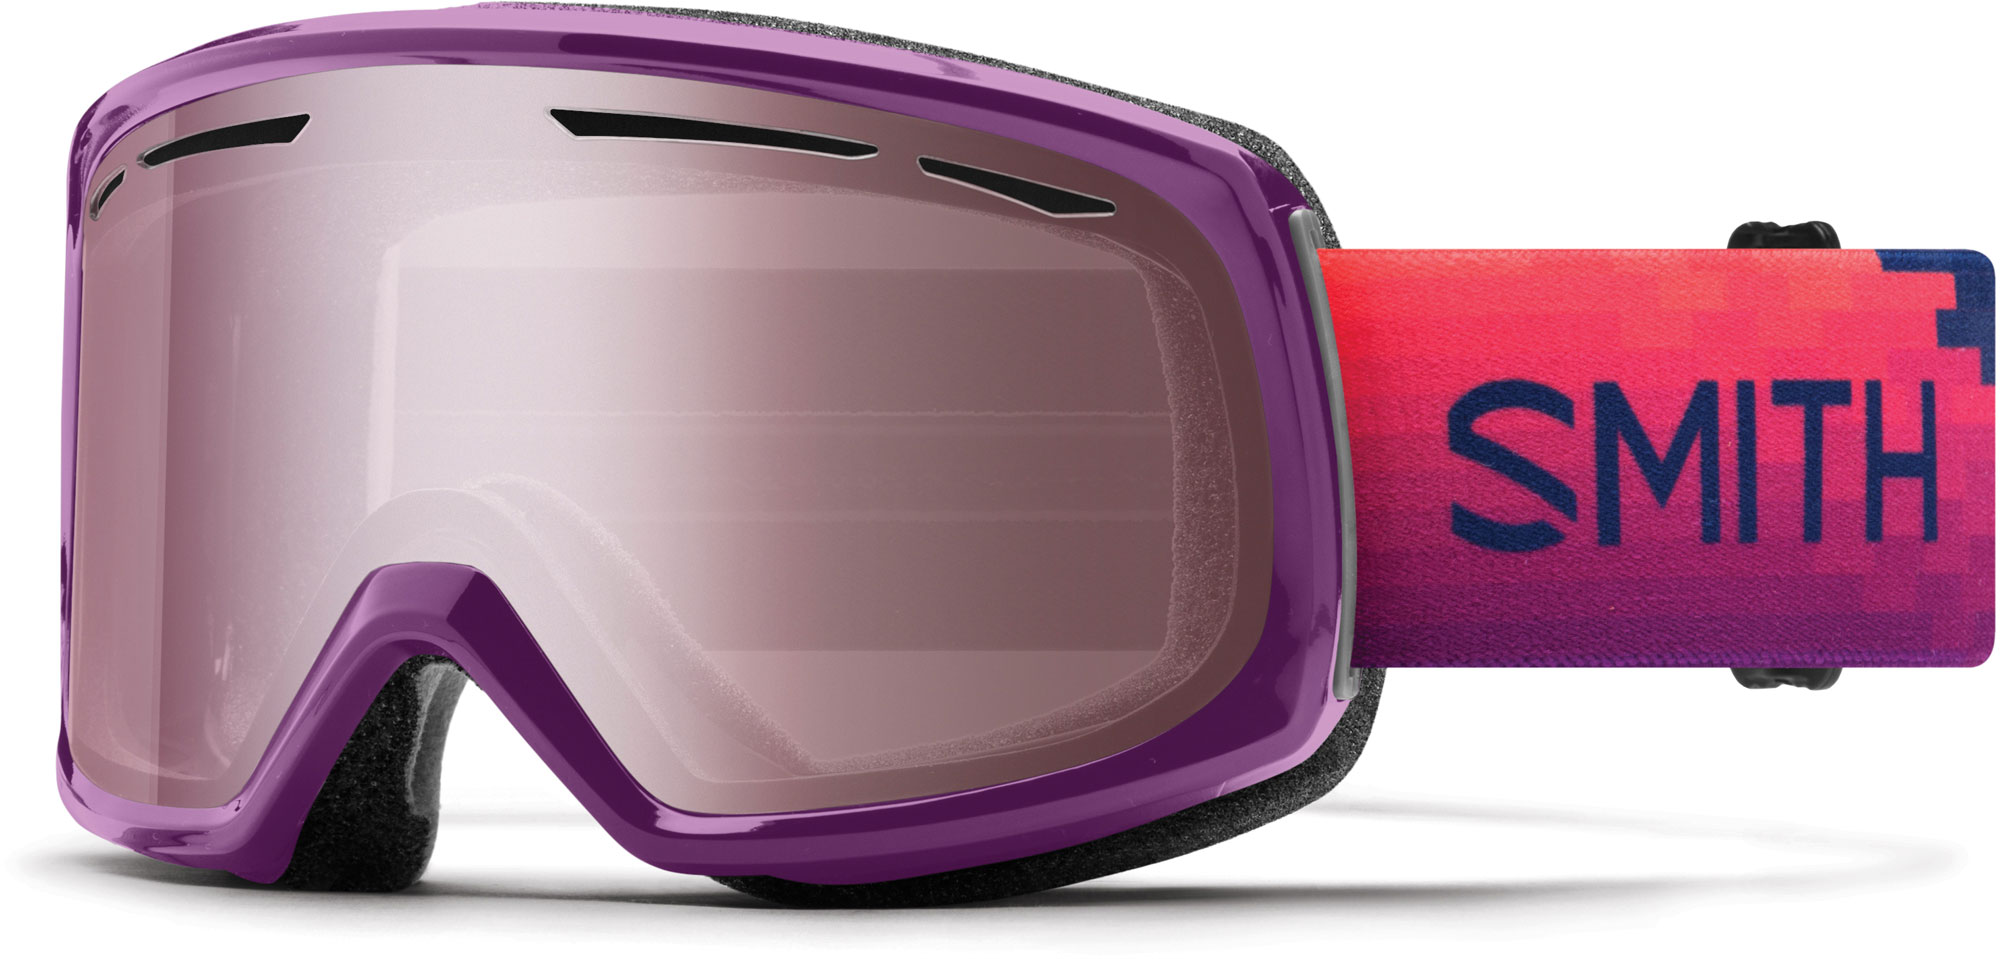 Women’s ski goggles